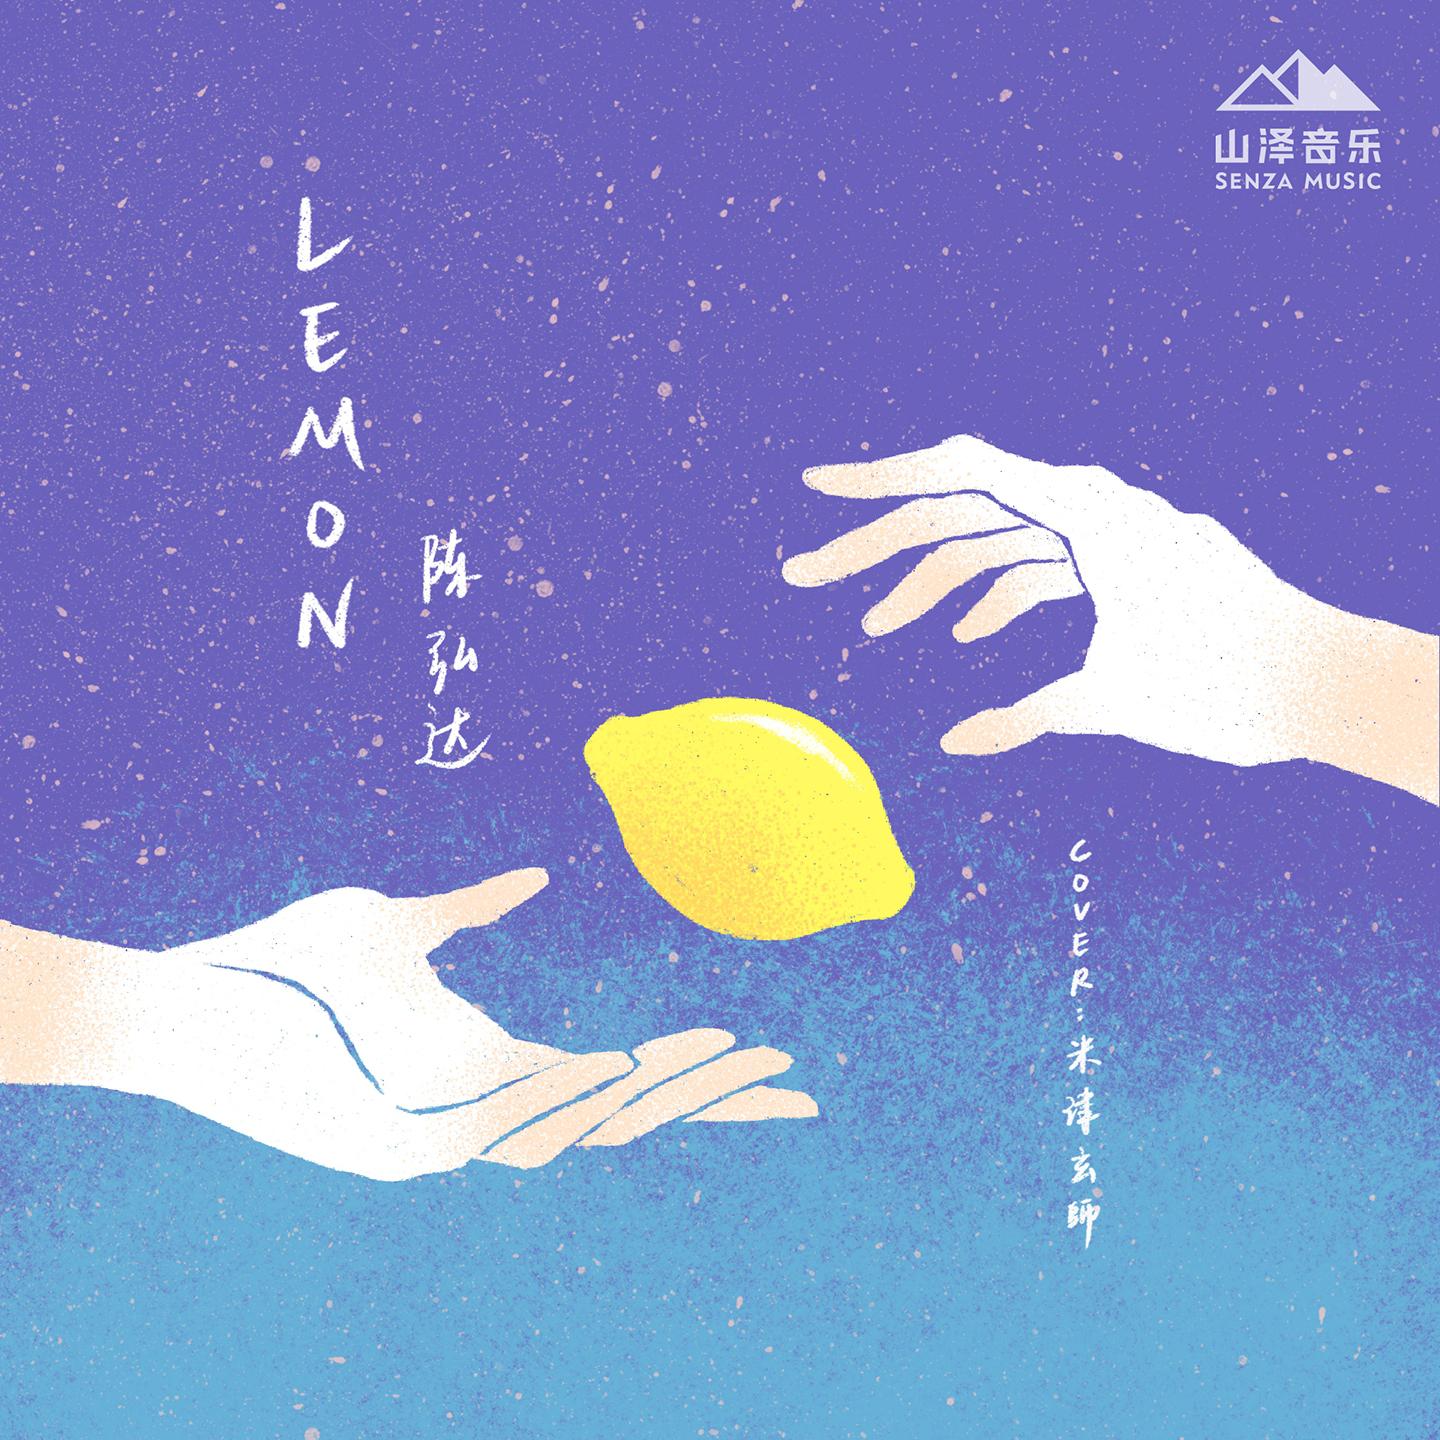 lemon专辑封面图片